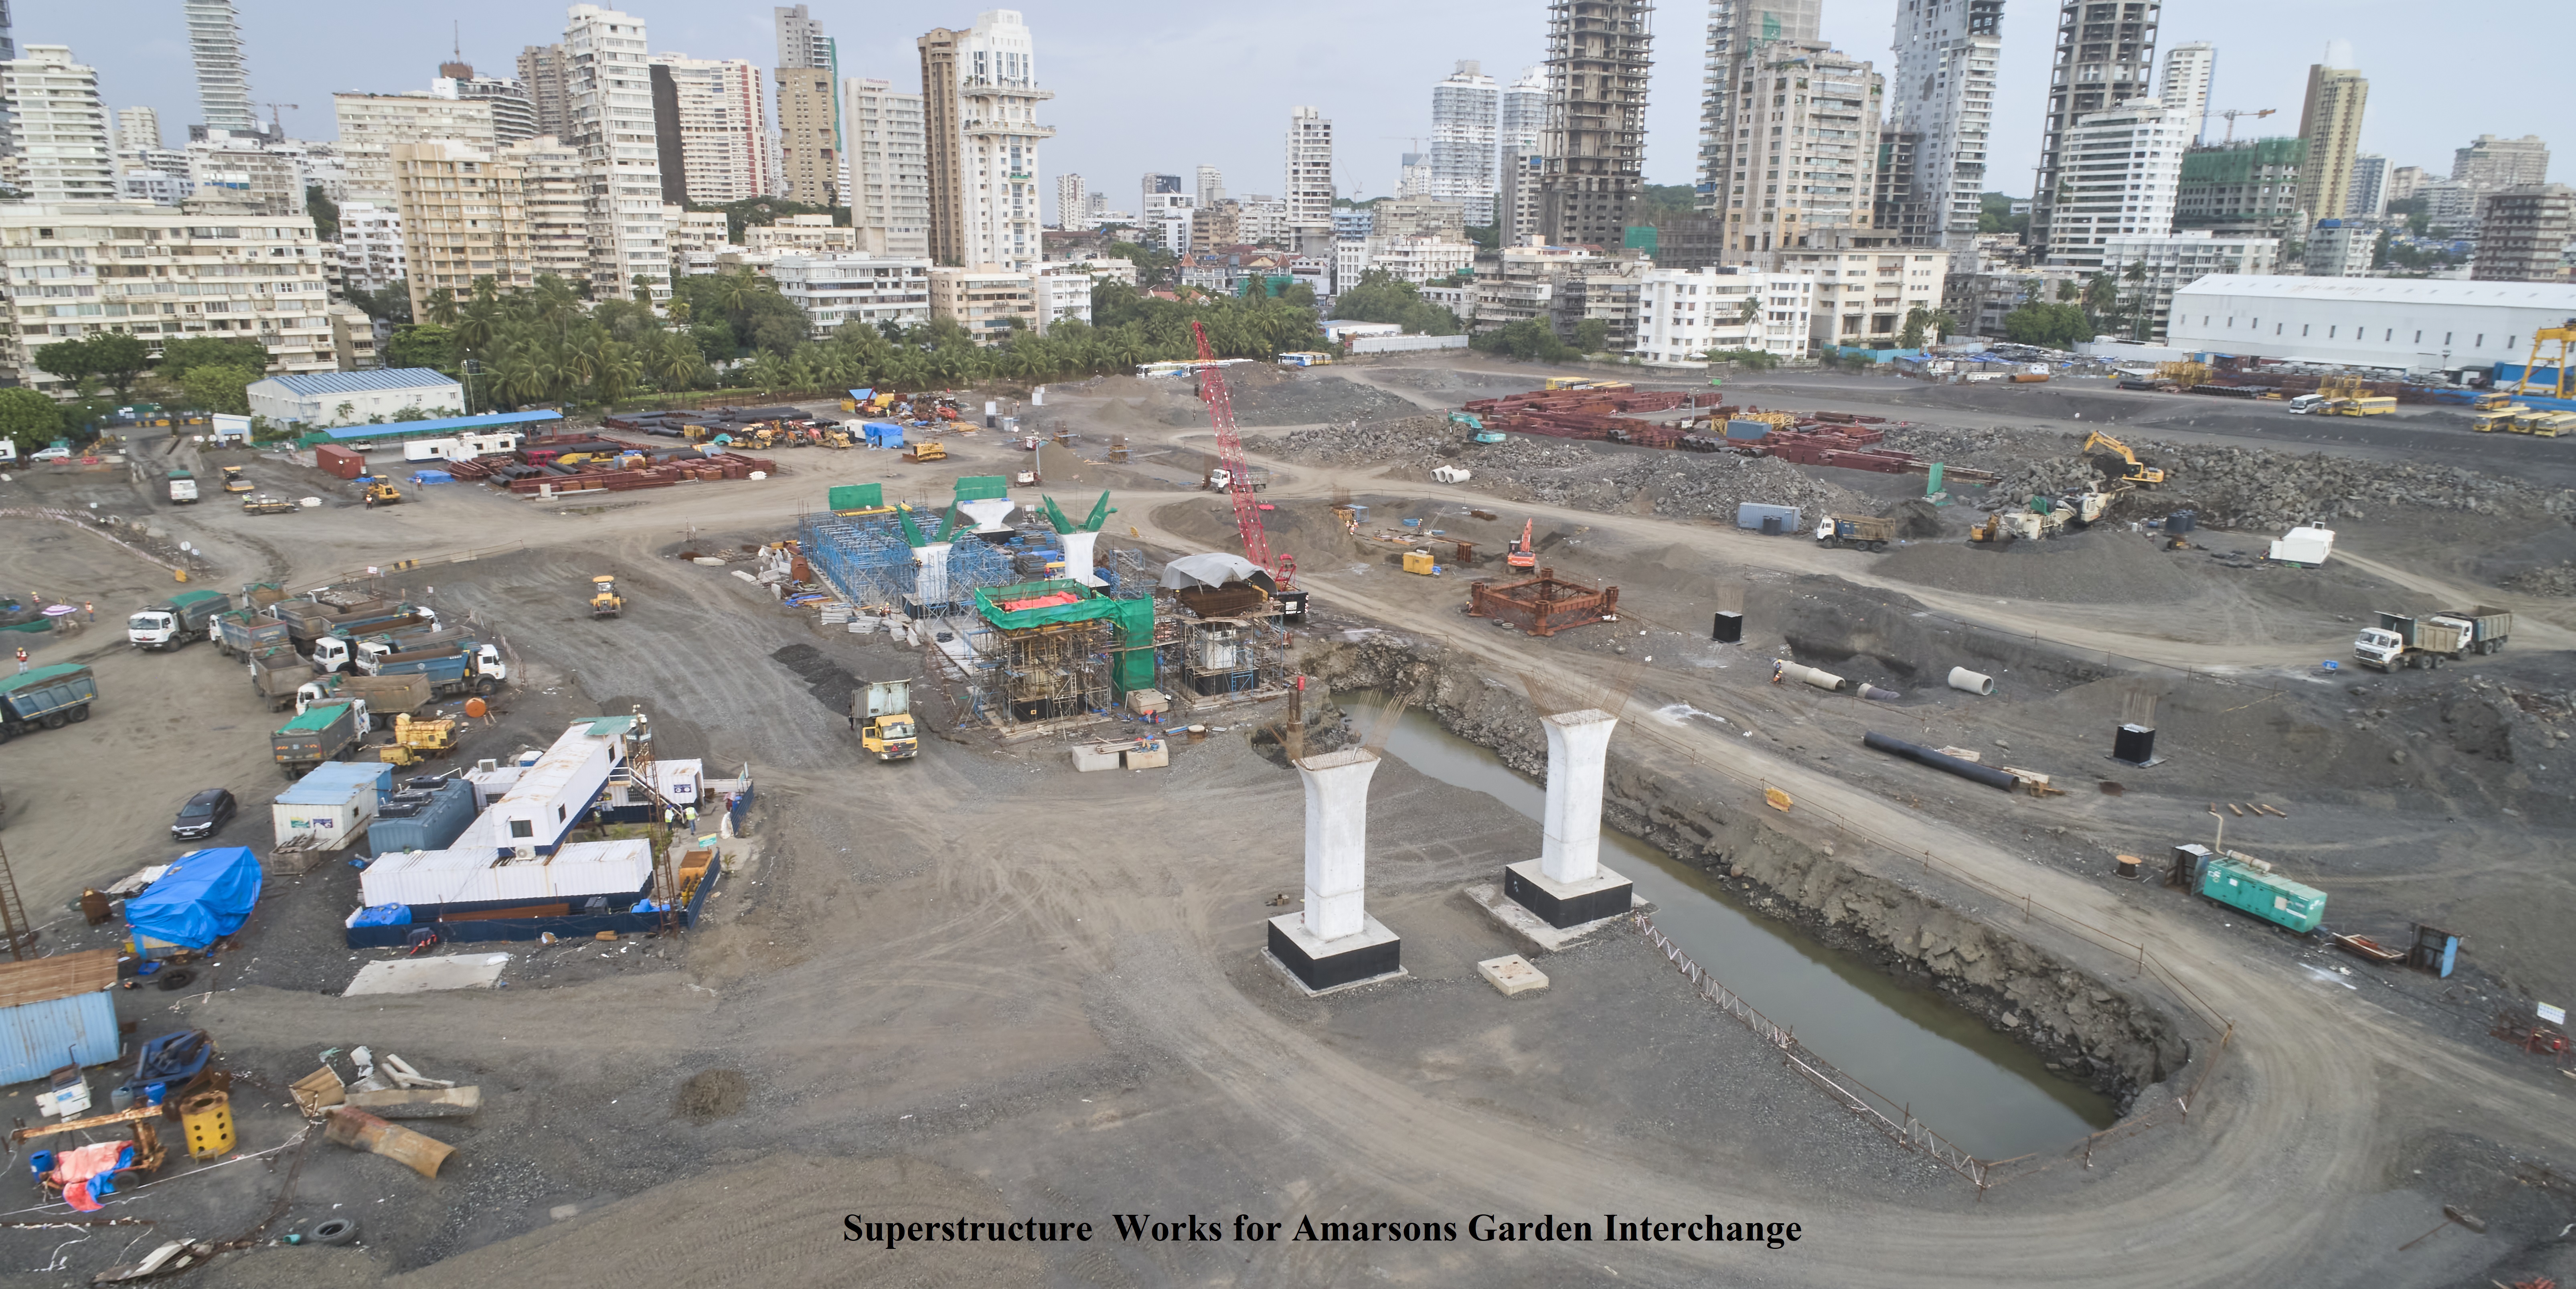 Superstructure works for Amarsons Garden Interchange